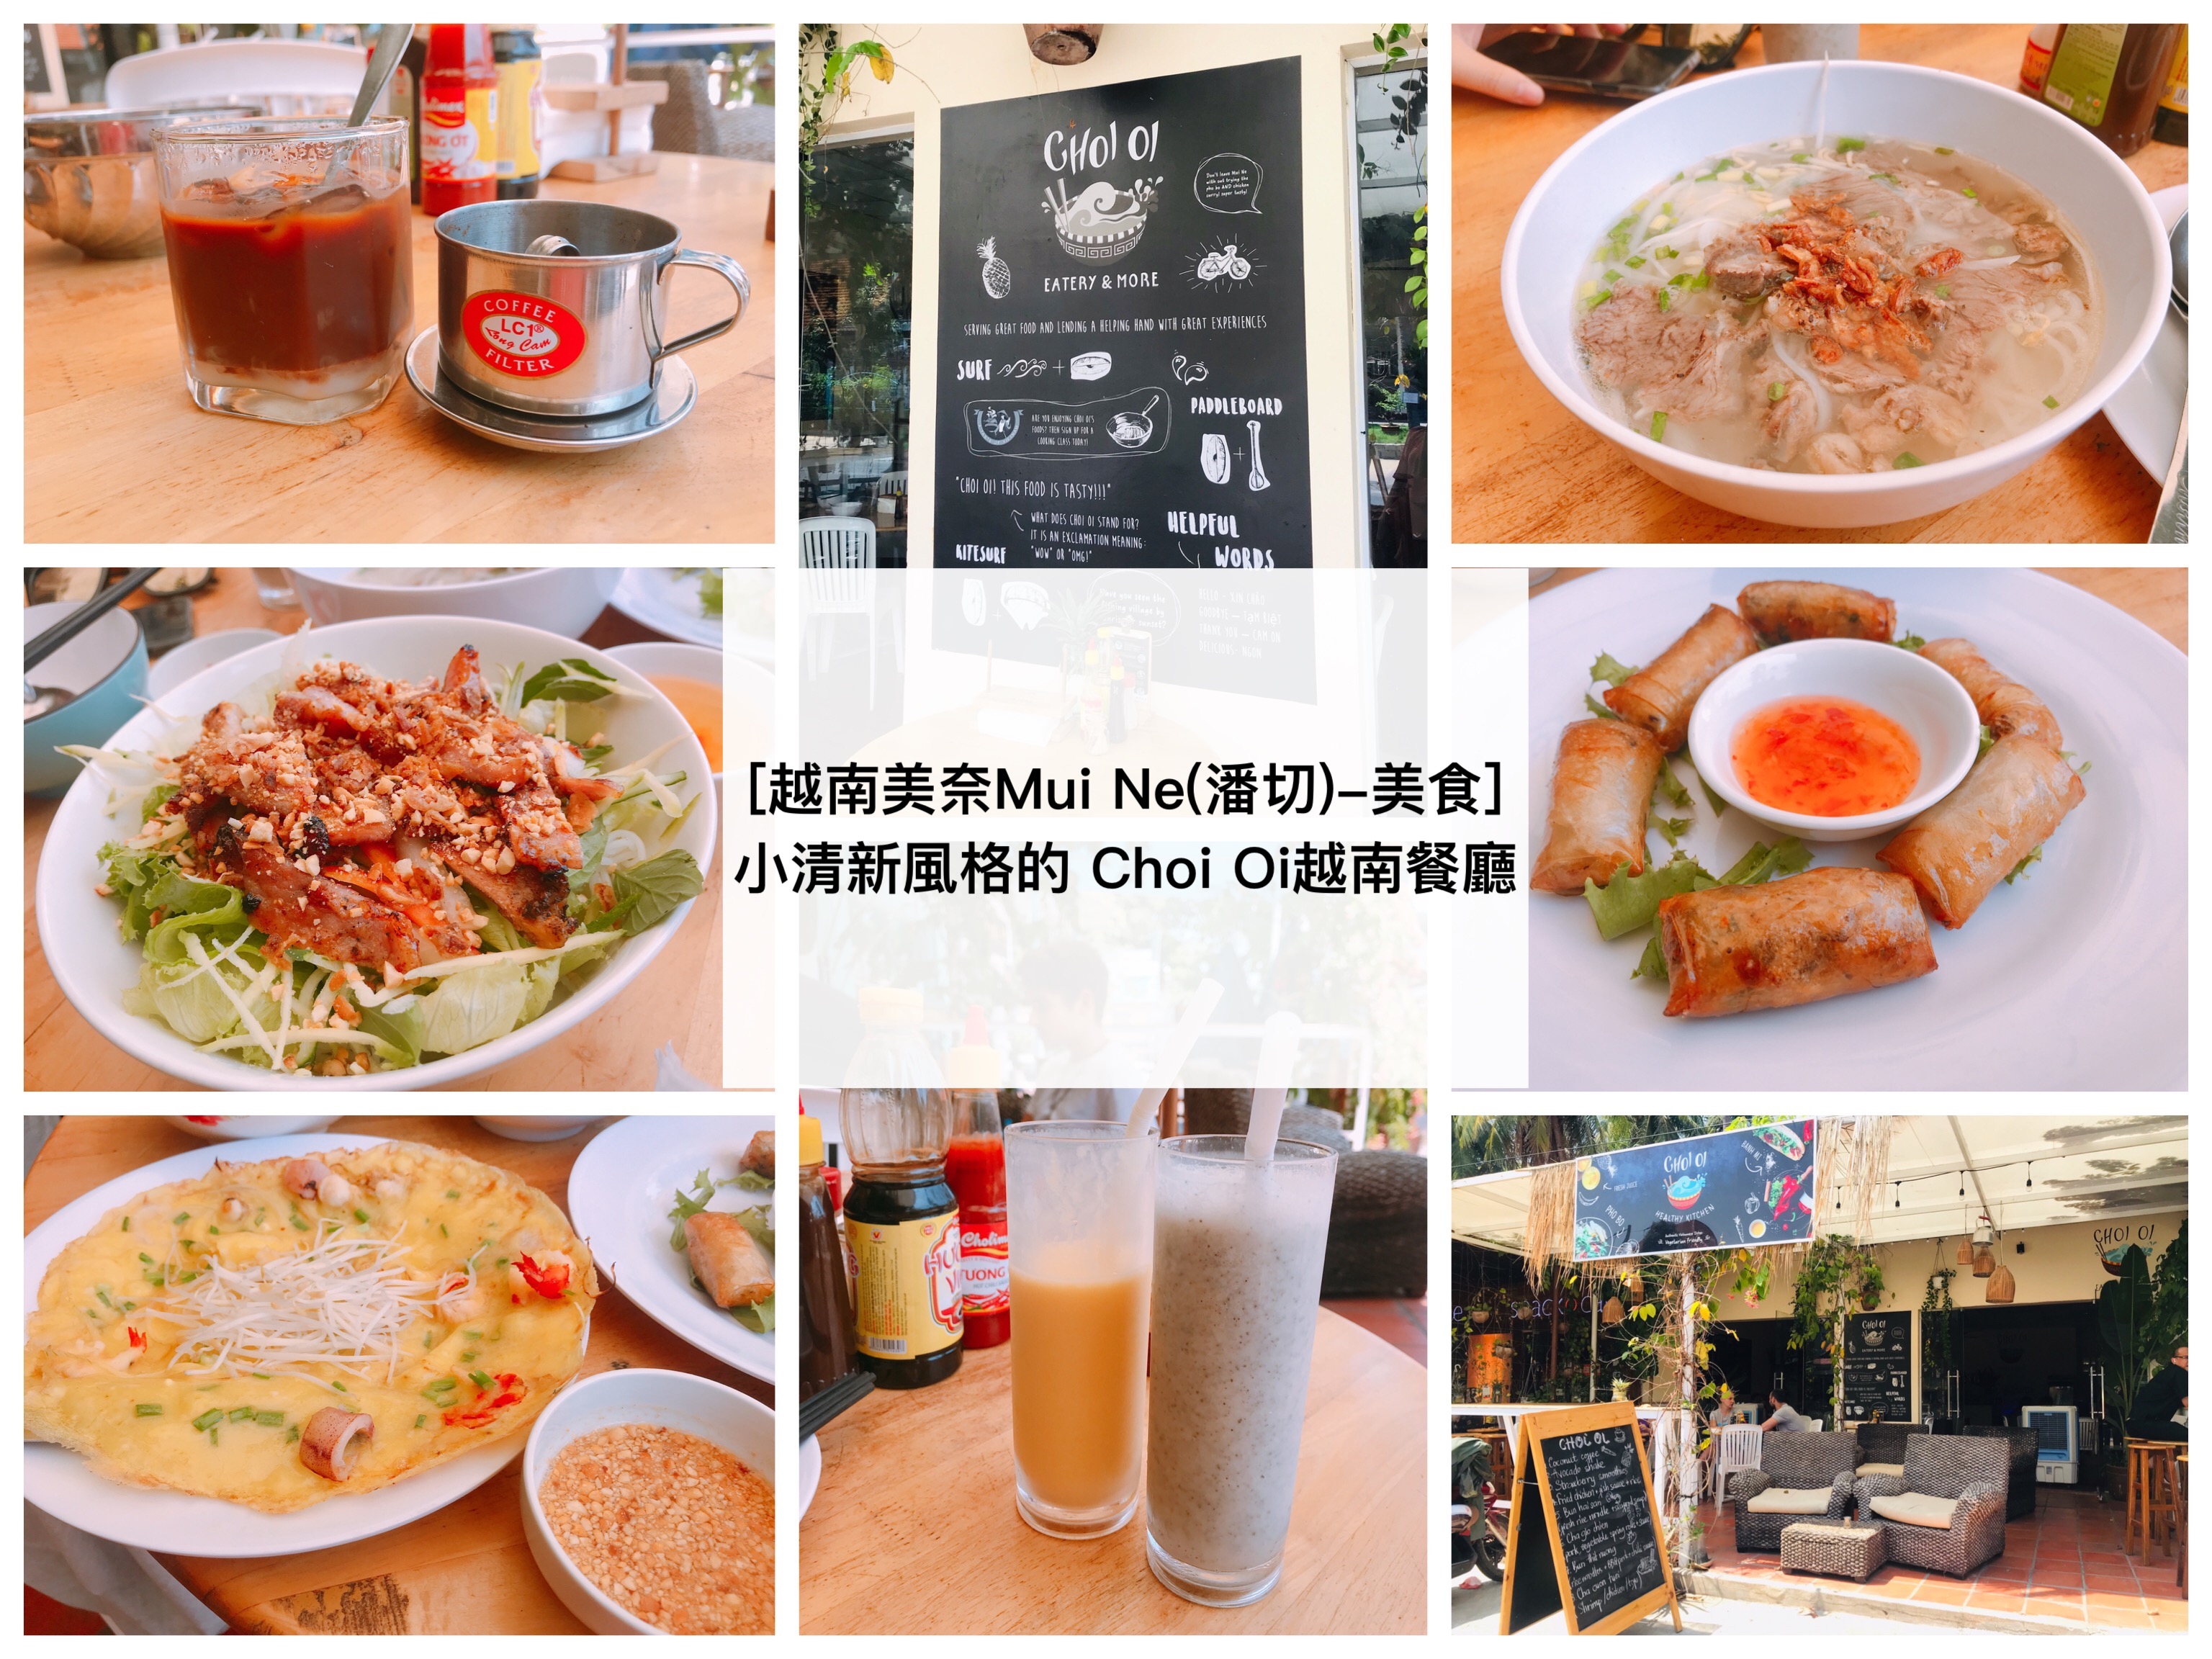 [越南美奈Mui Ne(潘切Phan Thiet)-美食] 推薦/ 小清新風格的越南餐廳 Choi Oi 餐廳